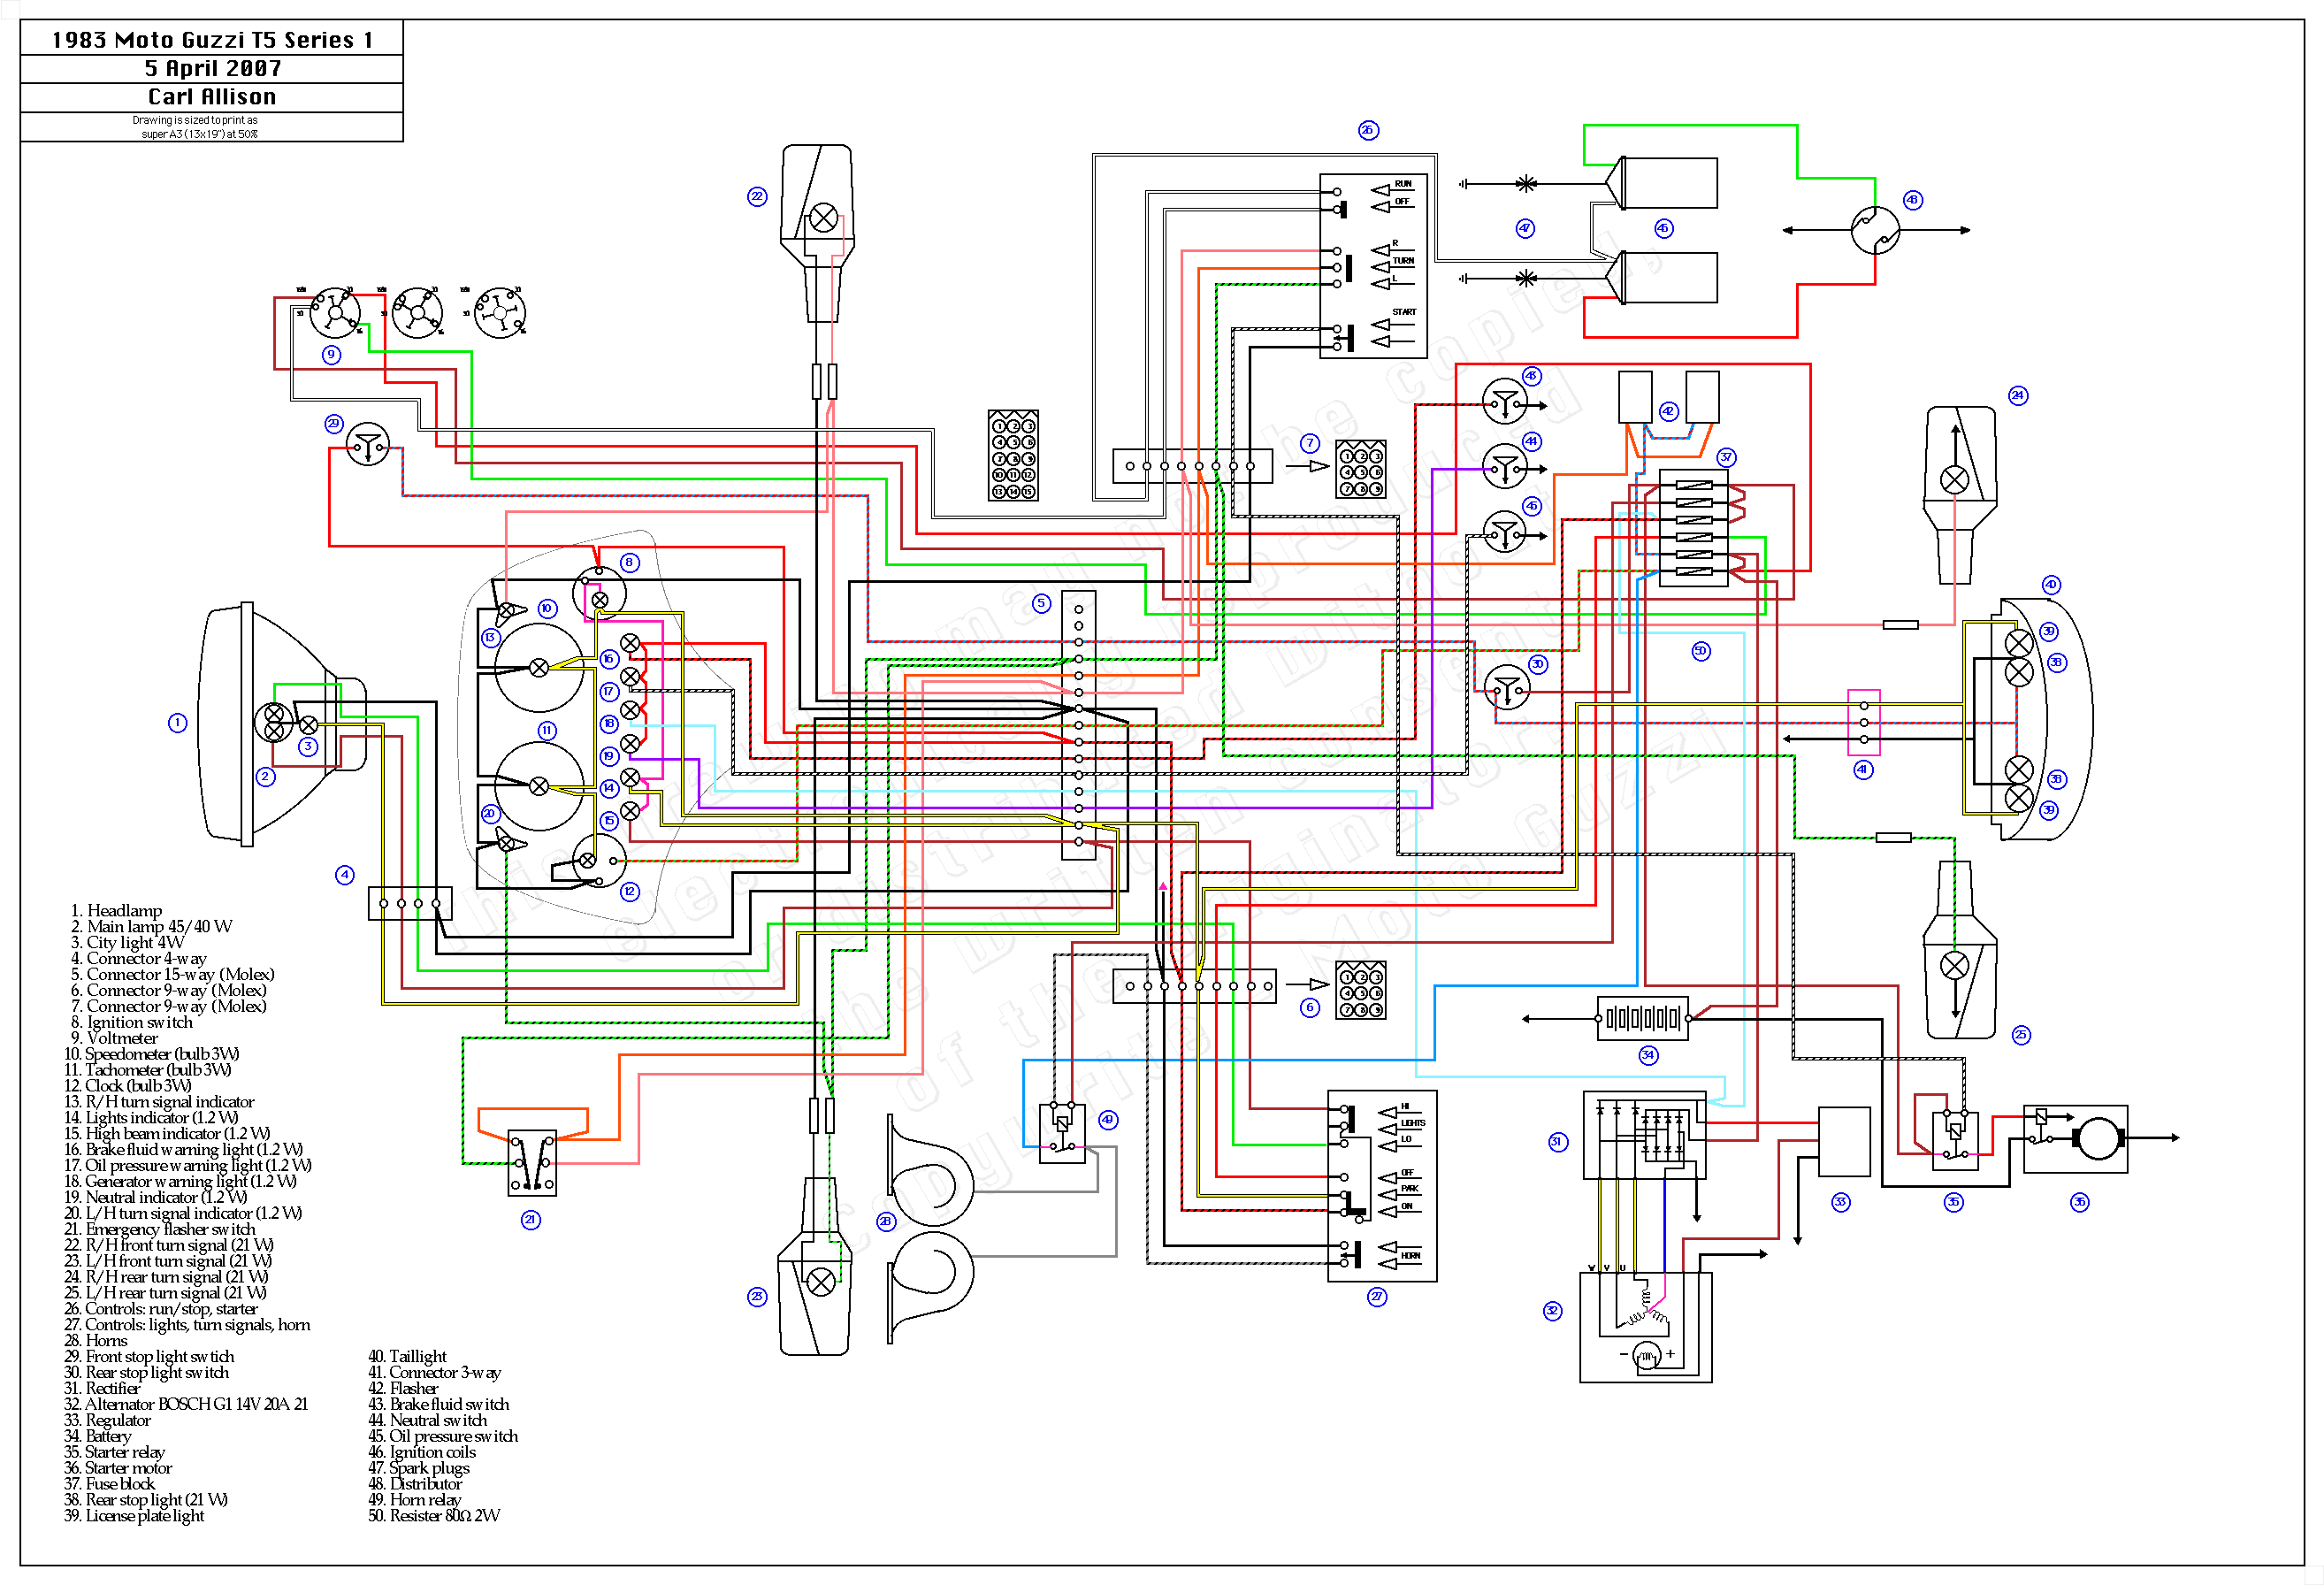 Schema circuito elettrico in serie